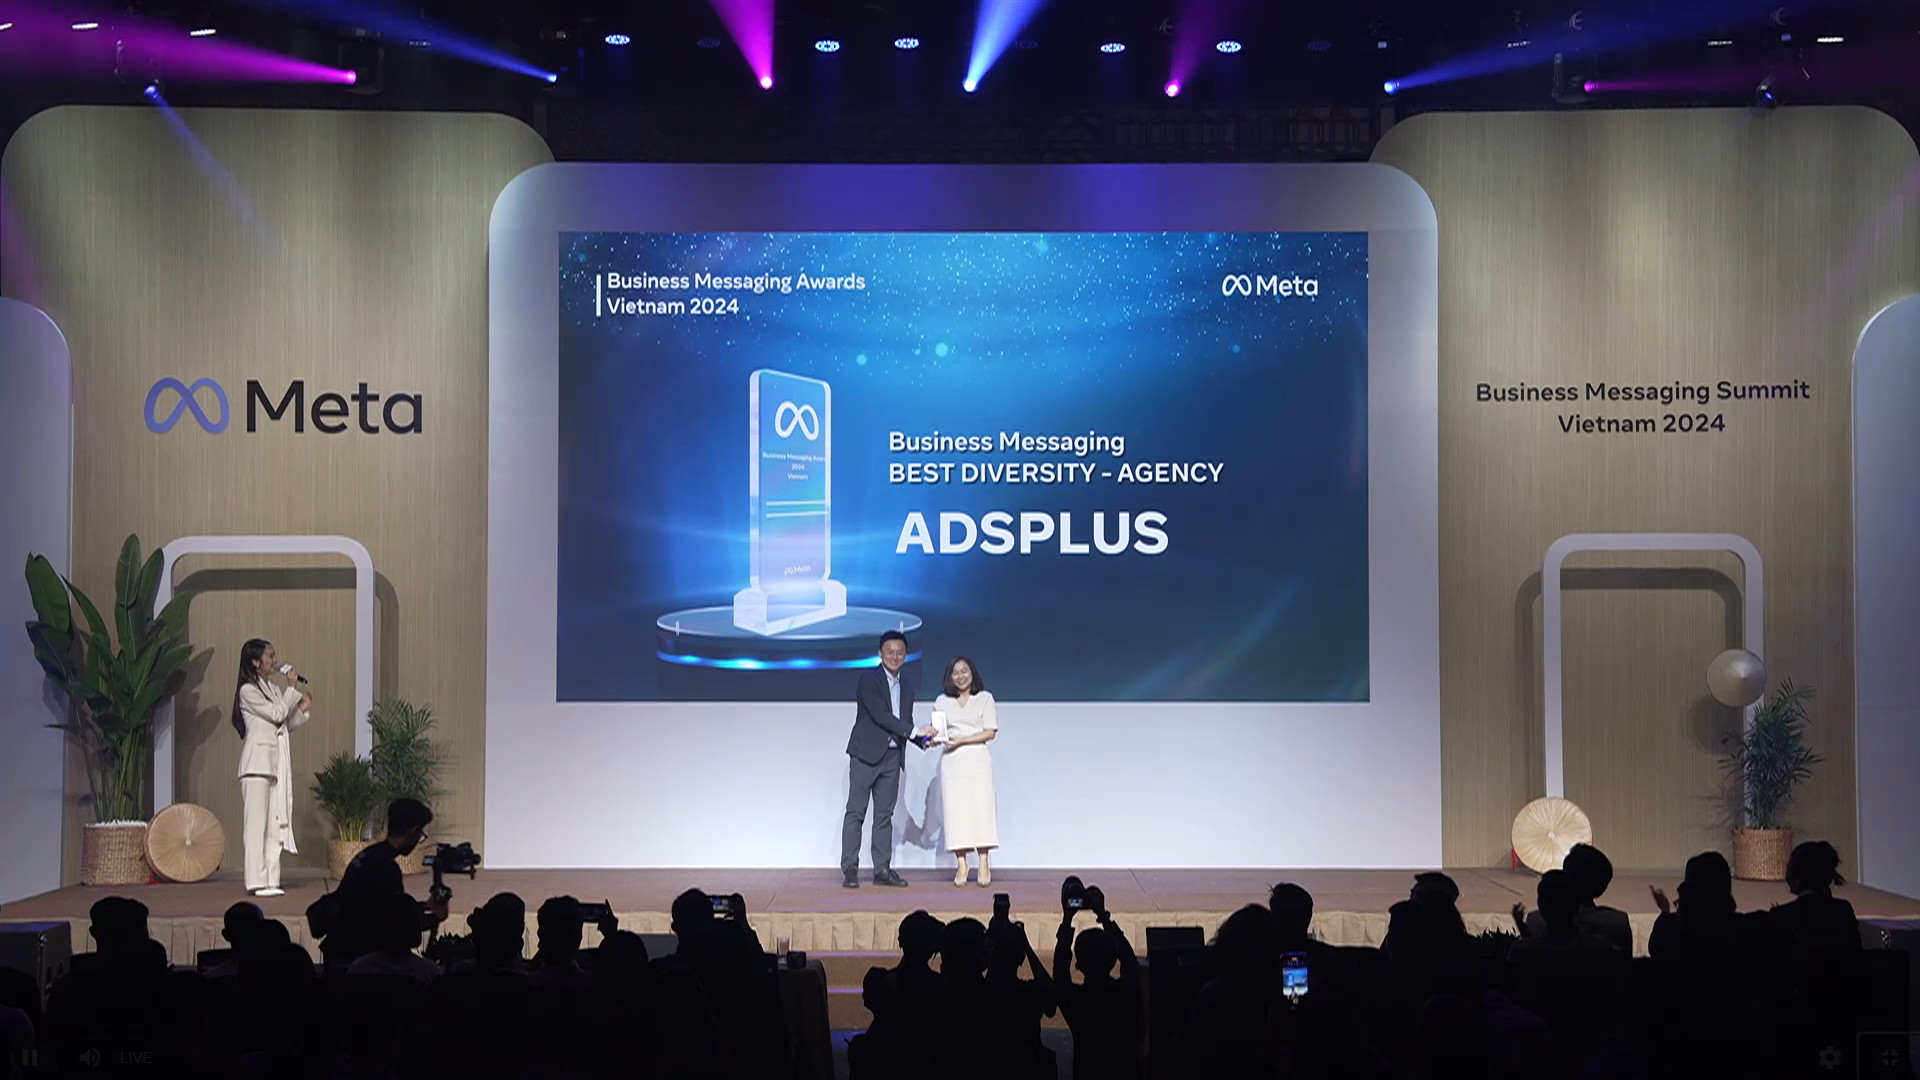 Adsplus tiếp tục được Meta vinh danh tại Business Messaging Awards Vietnam 2024 ở hạng mục Best Diversity - Agency.